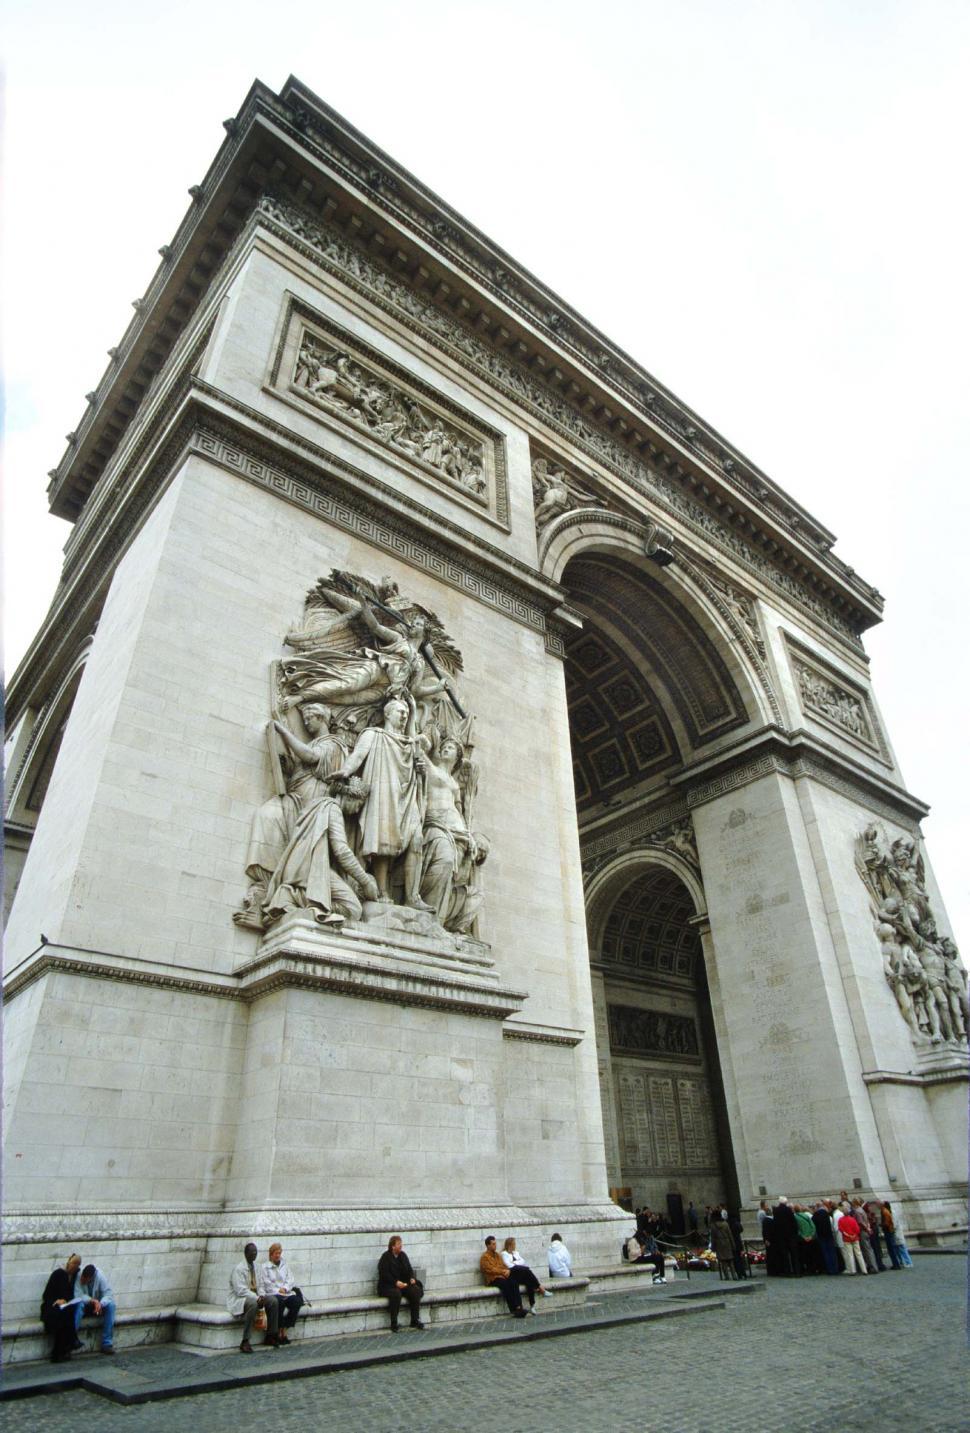 Free Image of Arc de Triumph, Paris, France 